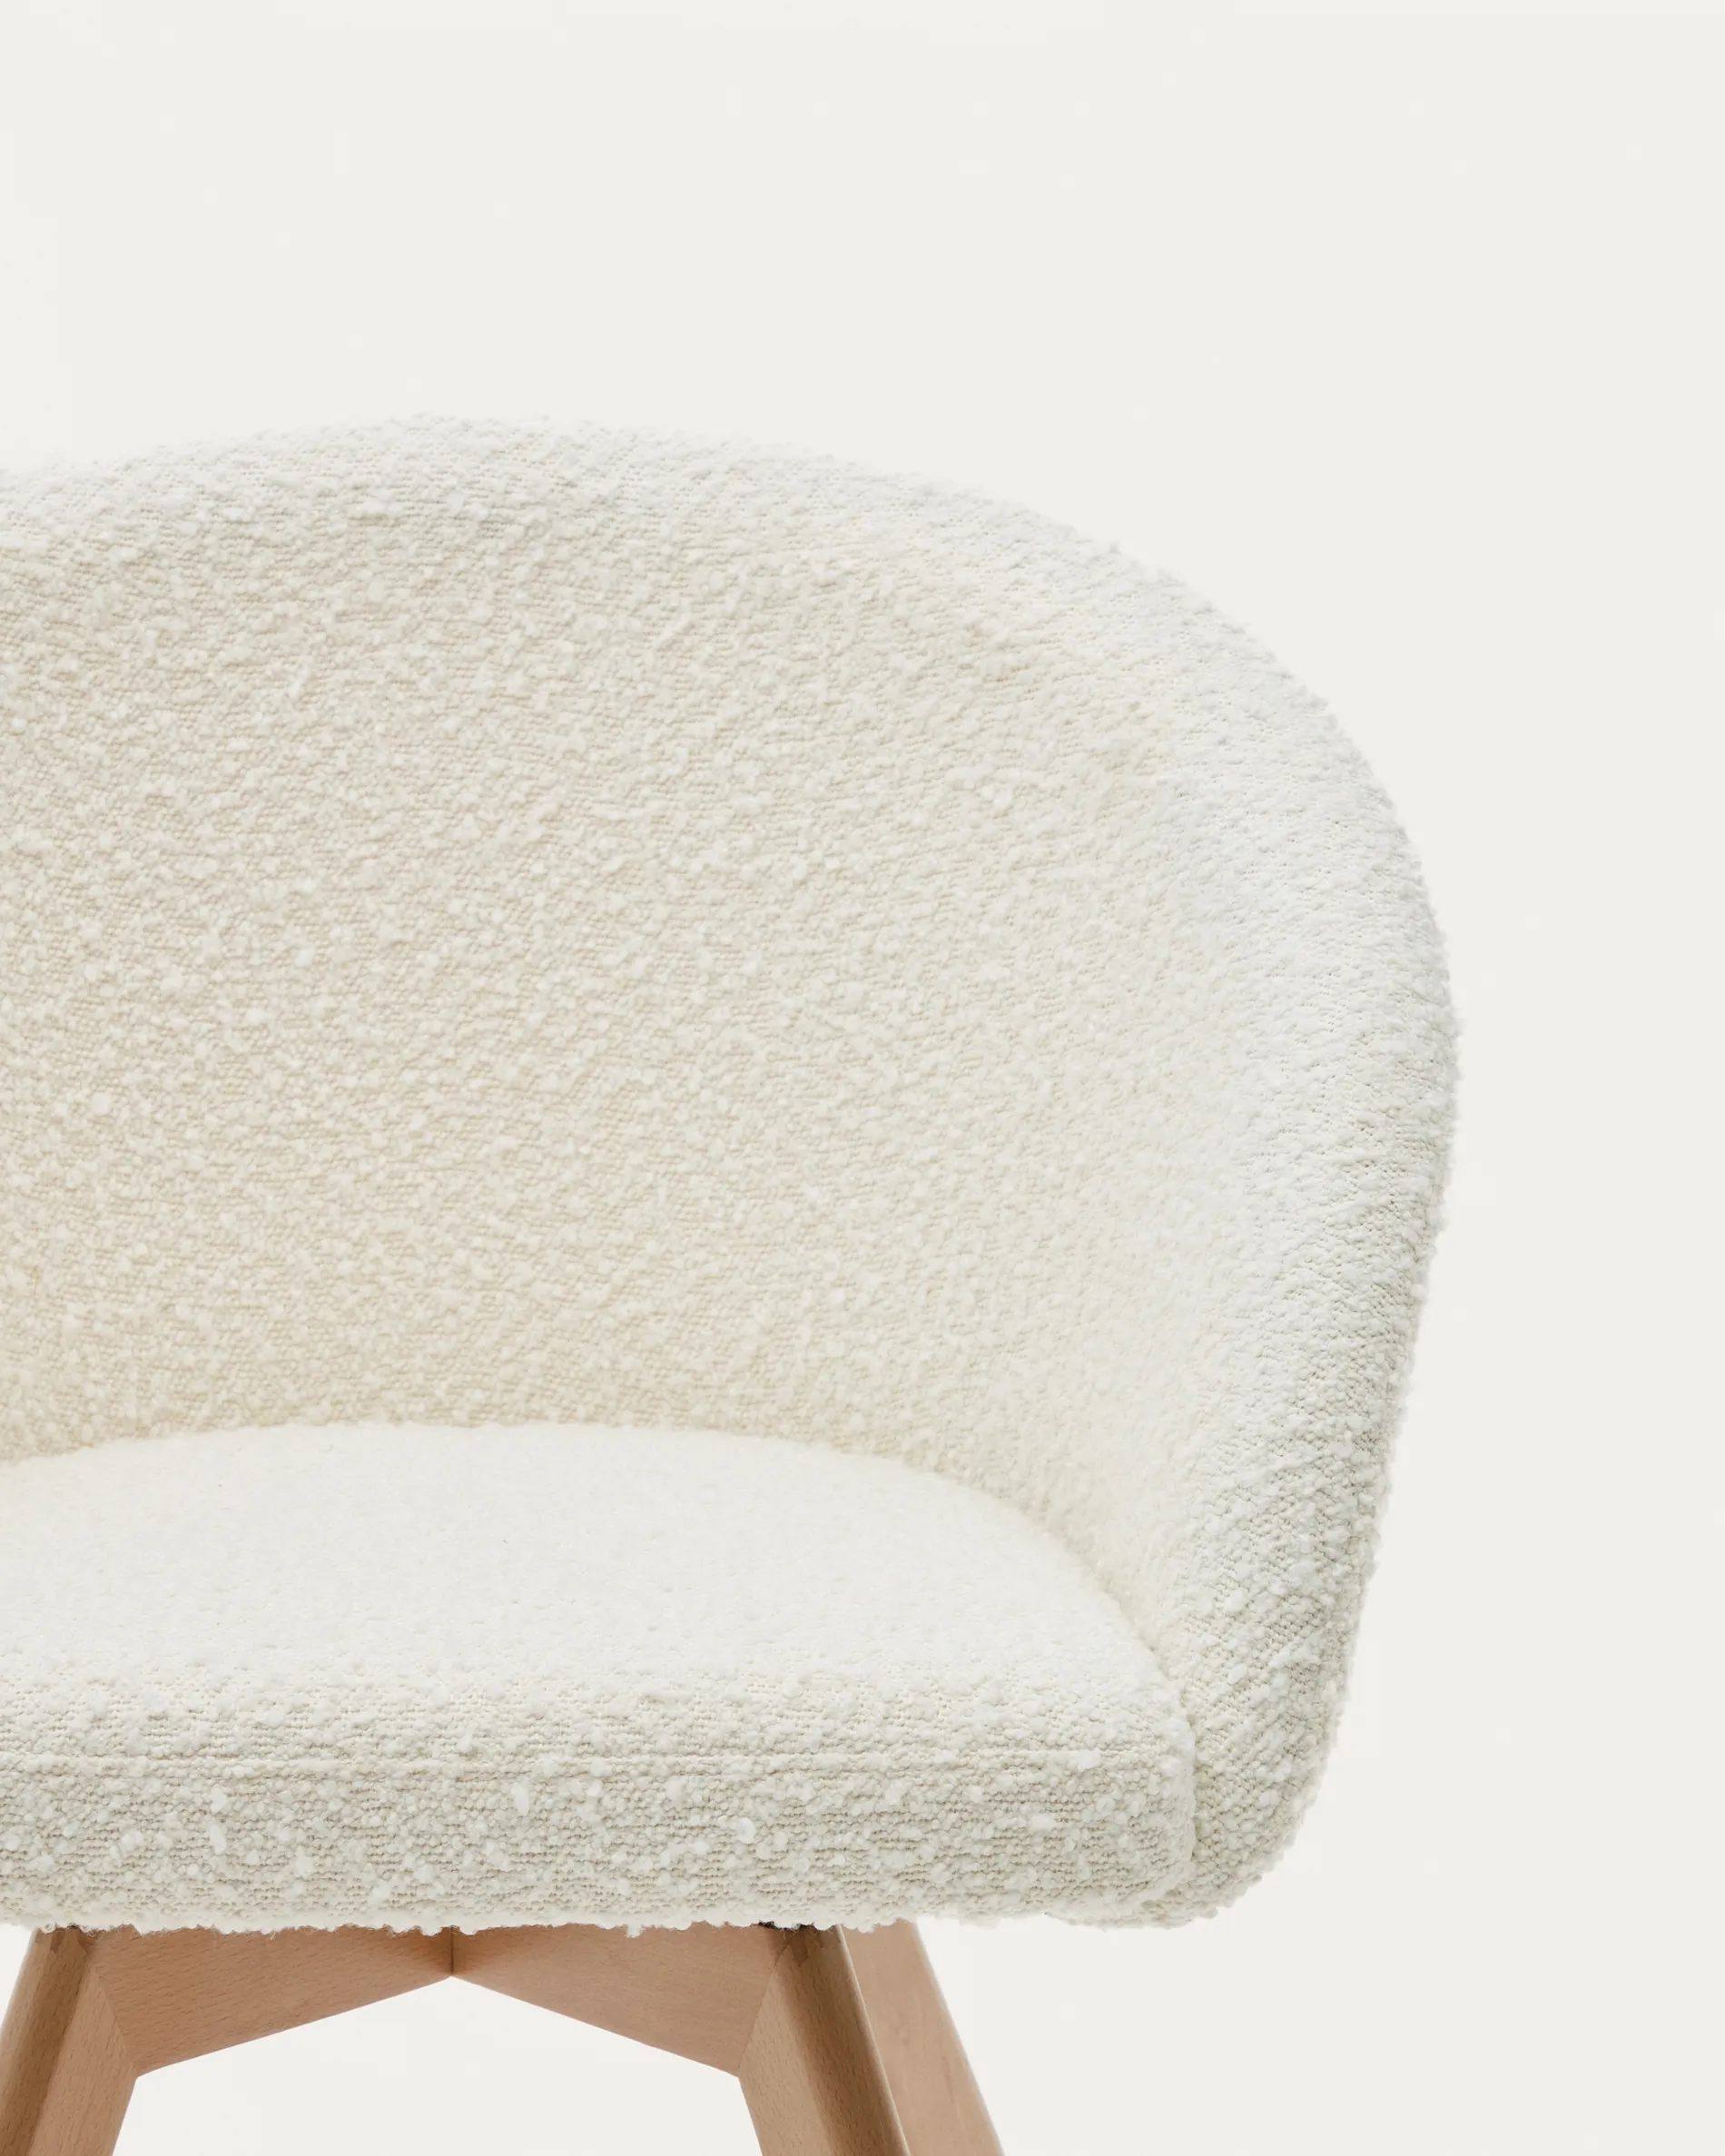 Поворотное кресло La Forma Marvin белая ткань букле ножки из ясеня 181475